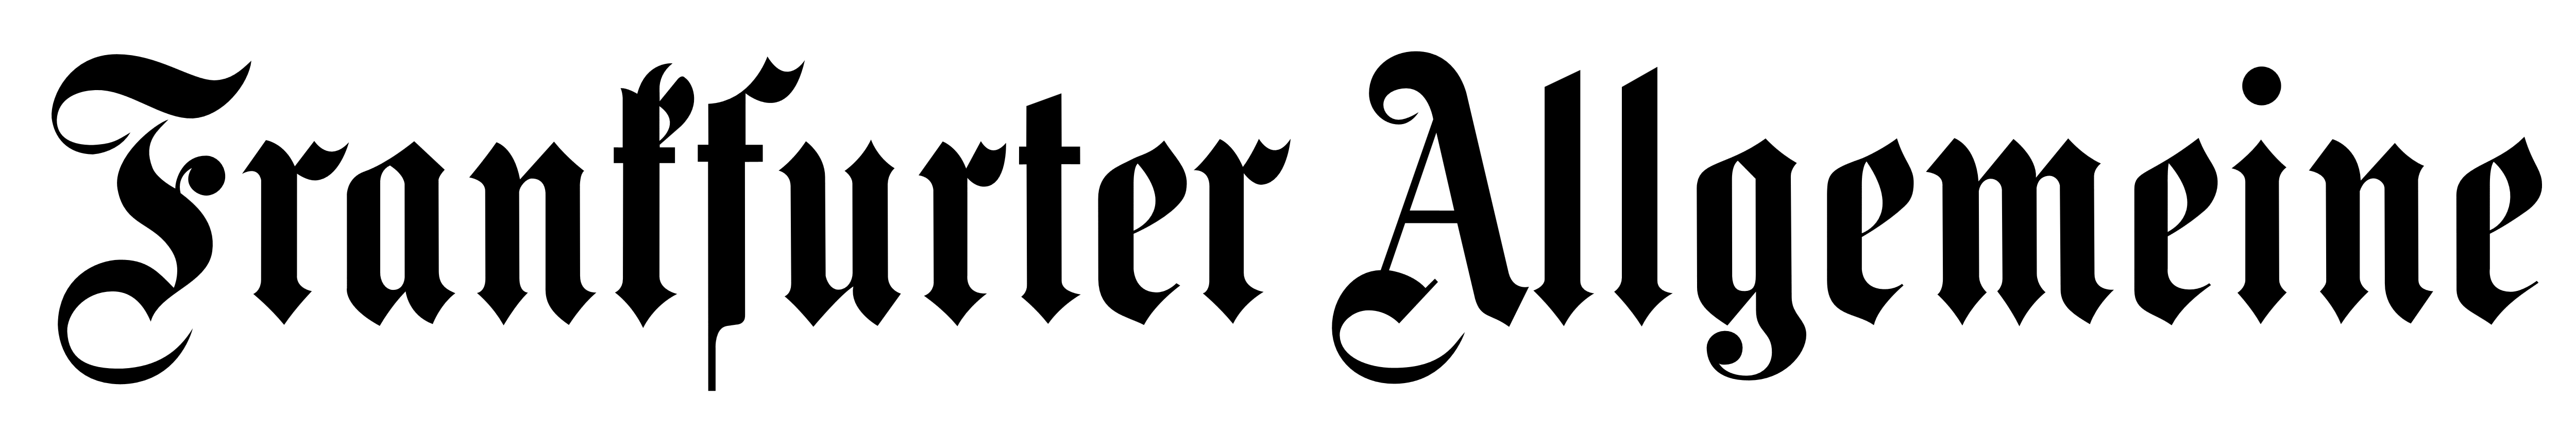 Frankfurter Allgemeine Logo